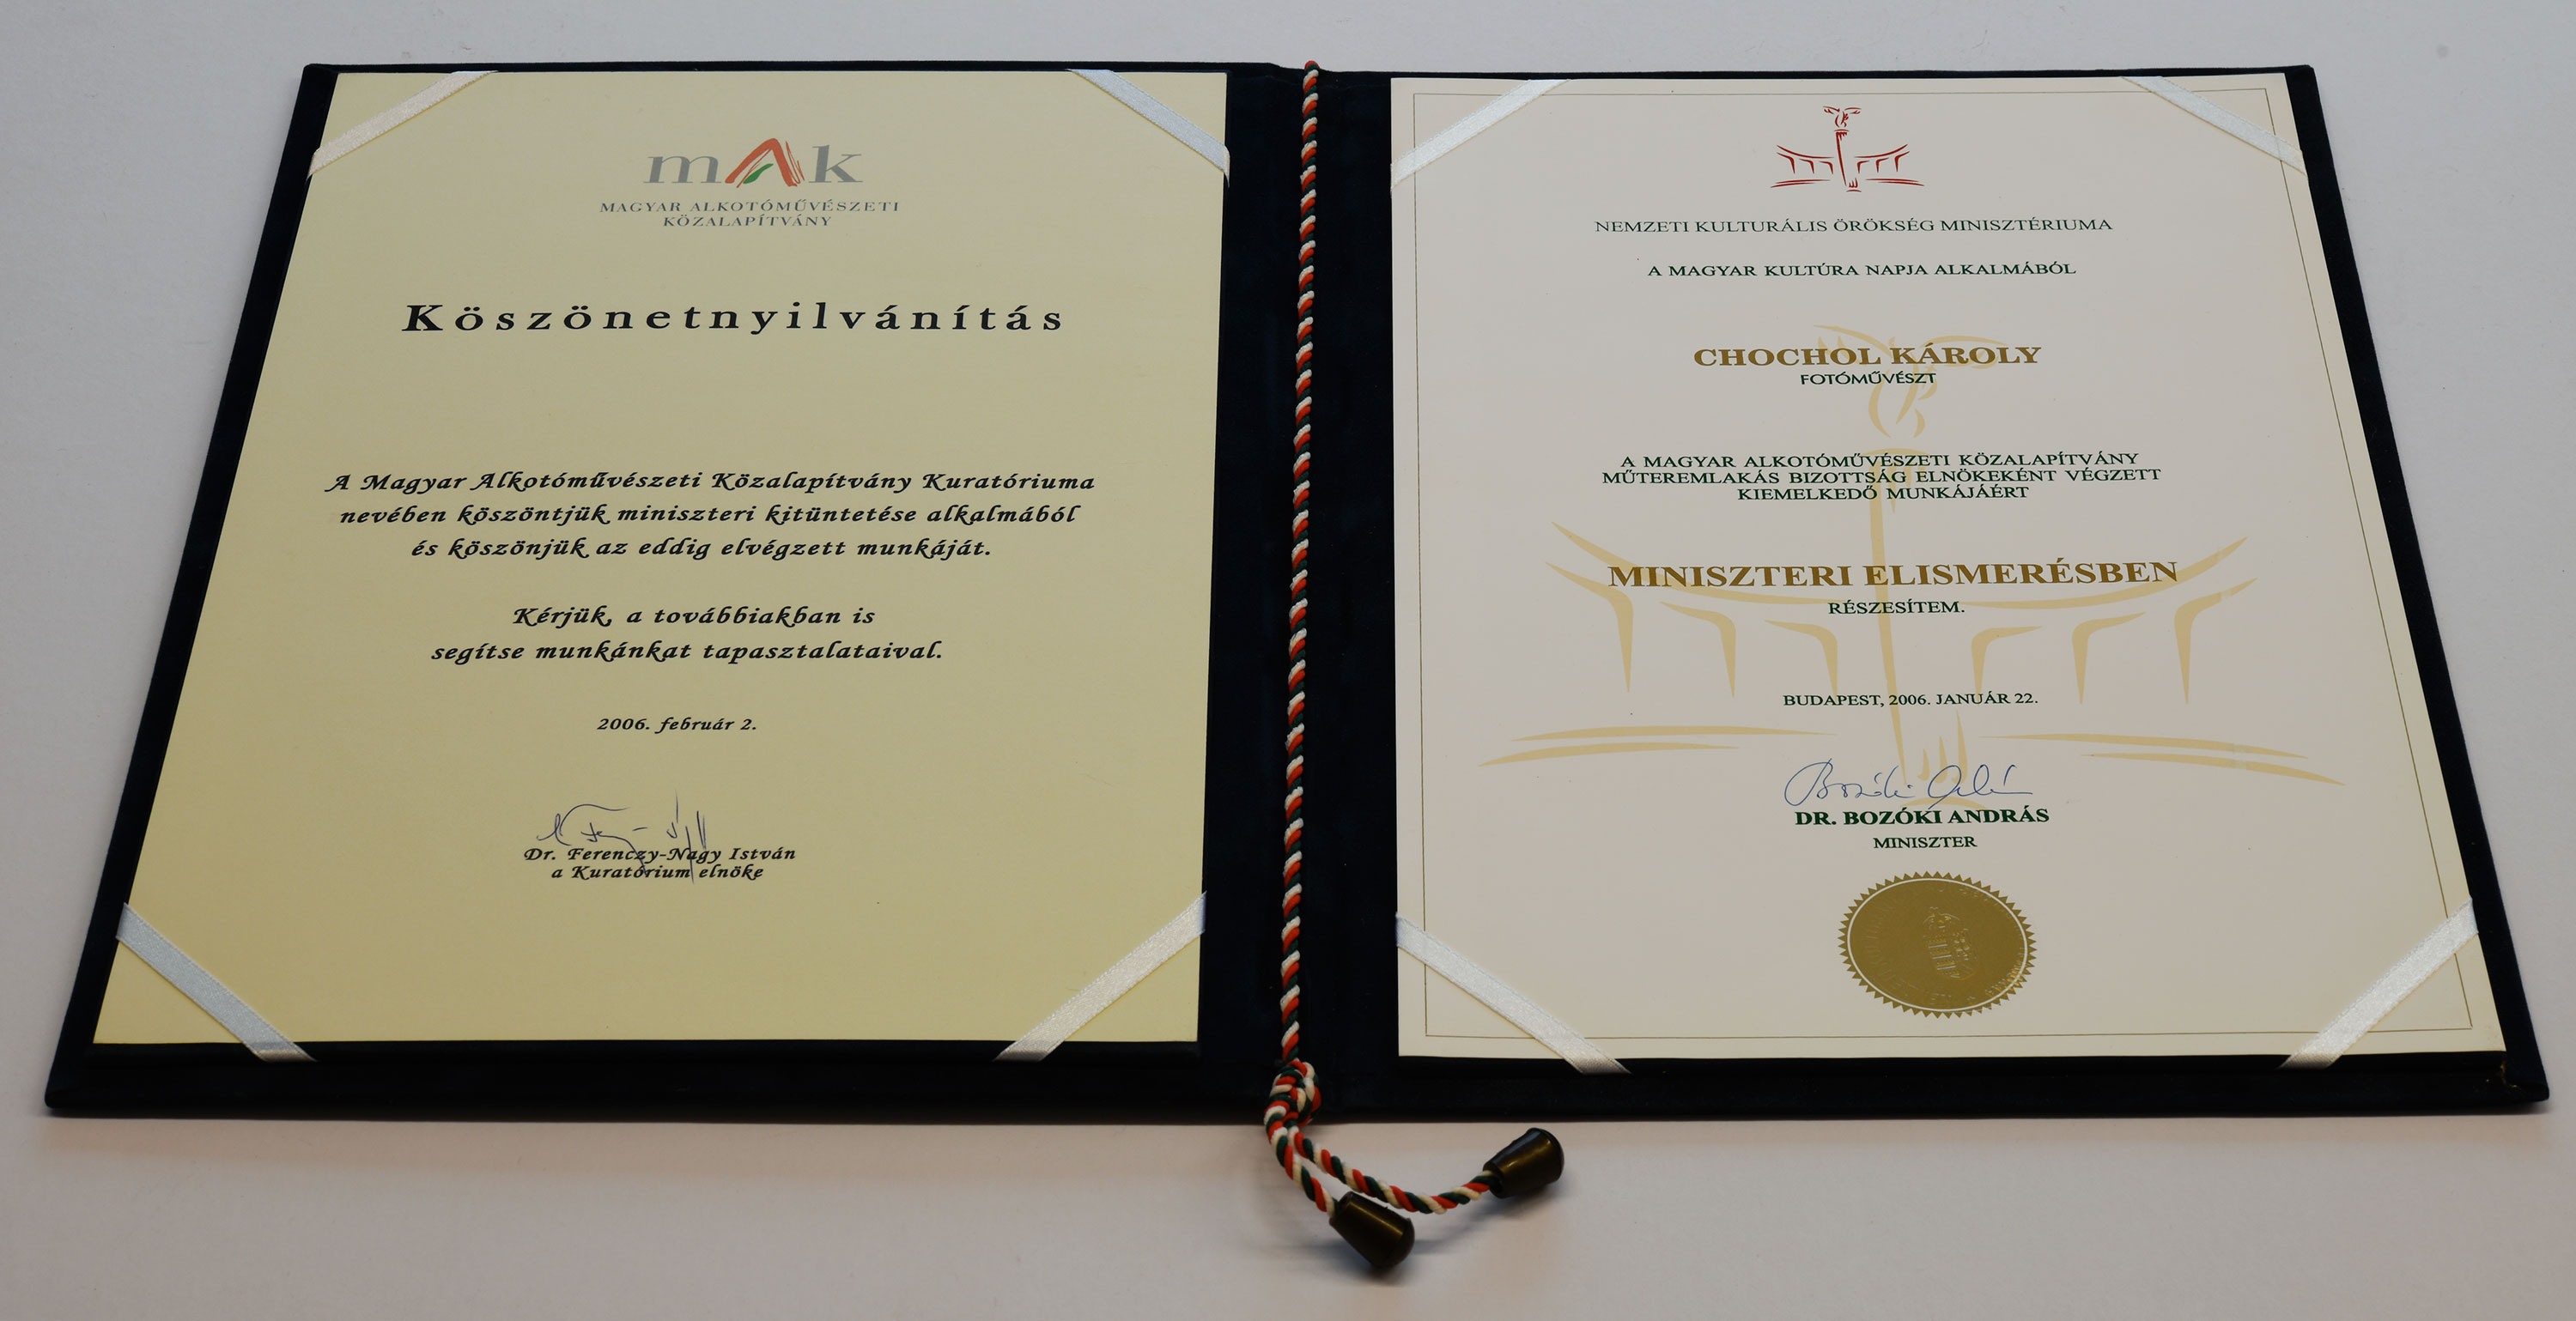 <b>Miniszteri Elismerés</b> a Nemzeti Kulturális Örökség Minisztériumától a Magyar Kultúra Napja alkalmából. aláírás: Dr. Bozóki András miniszter. <br>2006. január 22. <i>oklevél</i> <br><i>(BFL XV.19.g.4.11)</i>